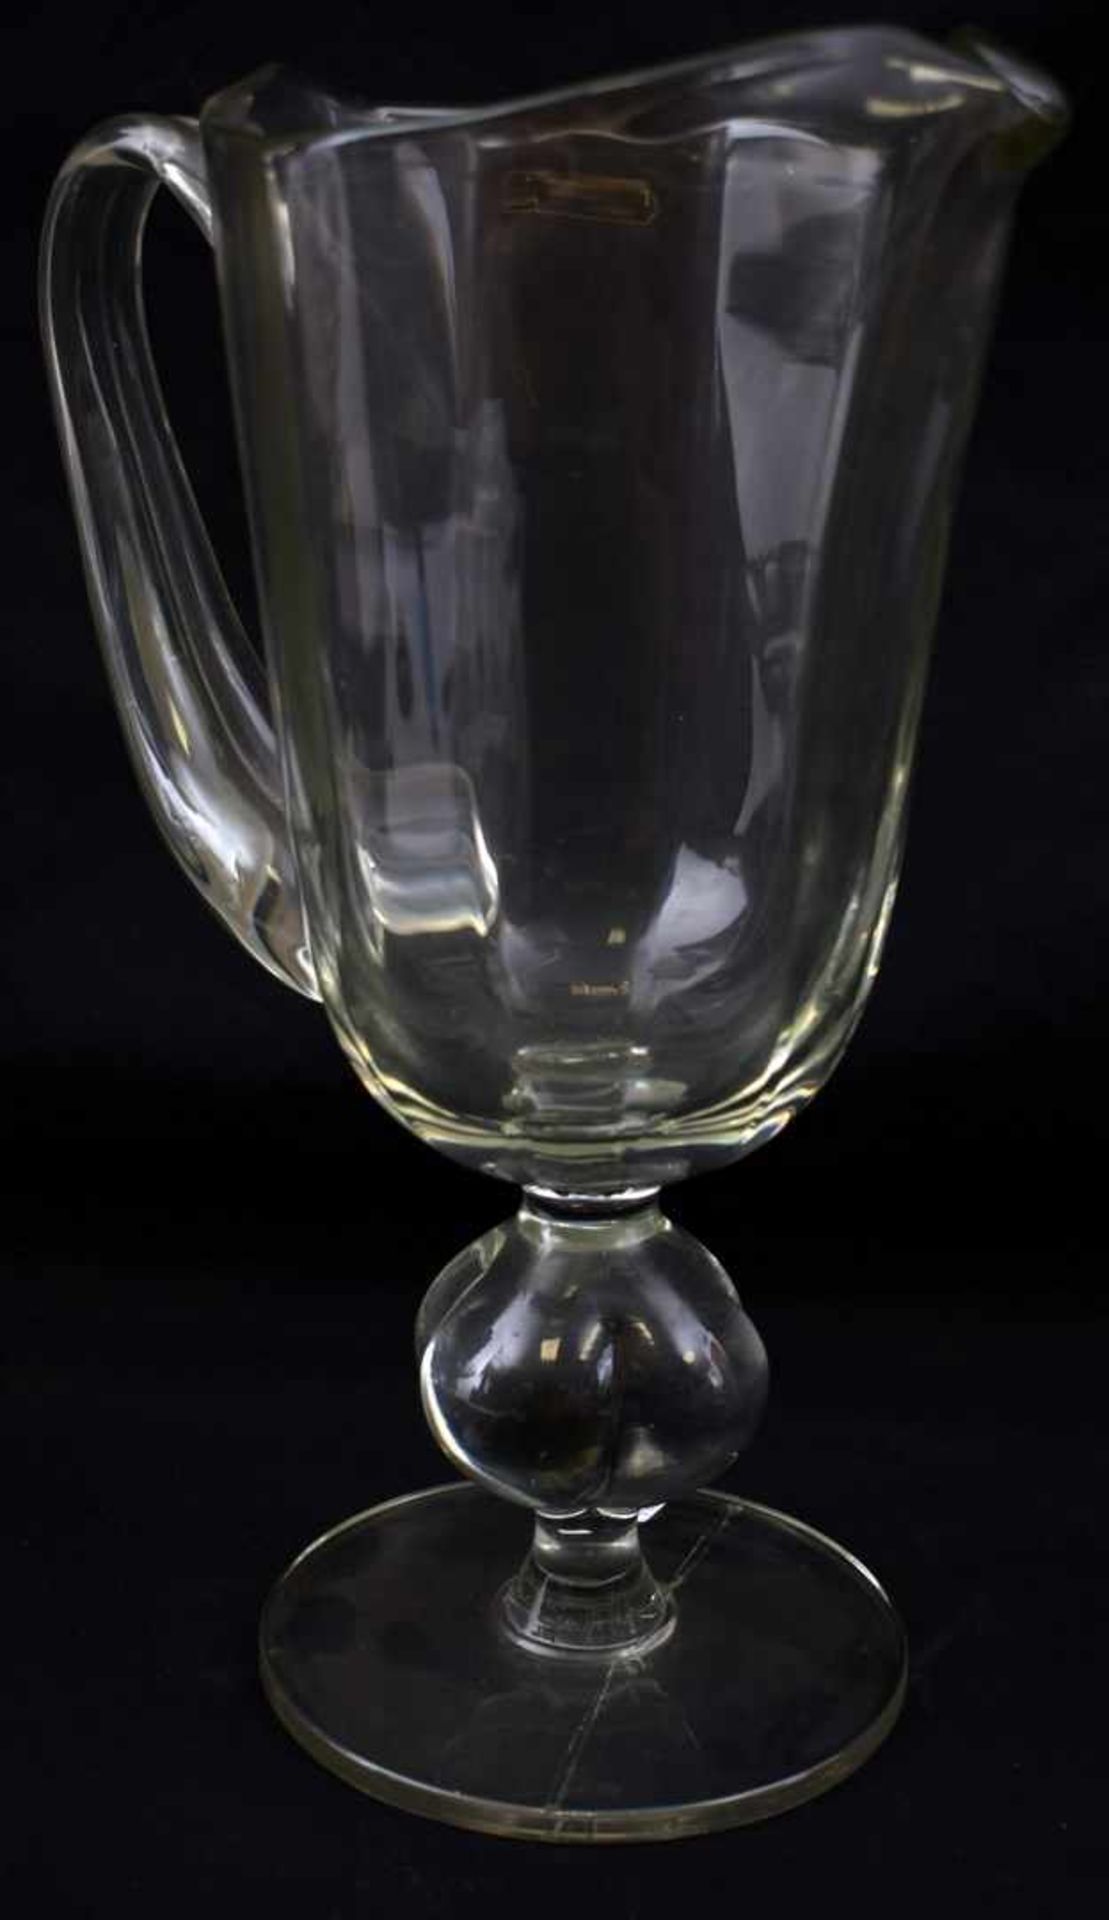 Krug farbl. Glas, runder Fuß und Schaft, ein Griff, H 29 cm